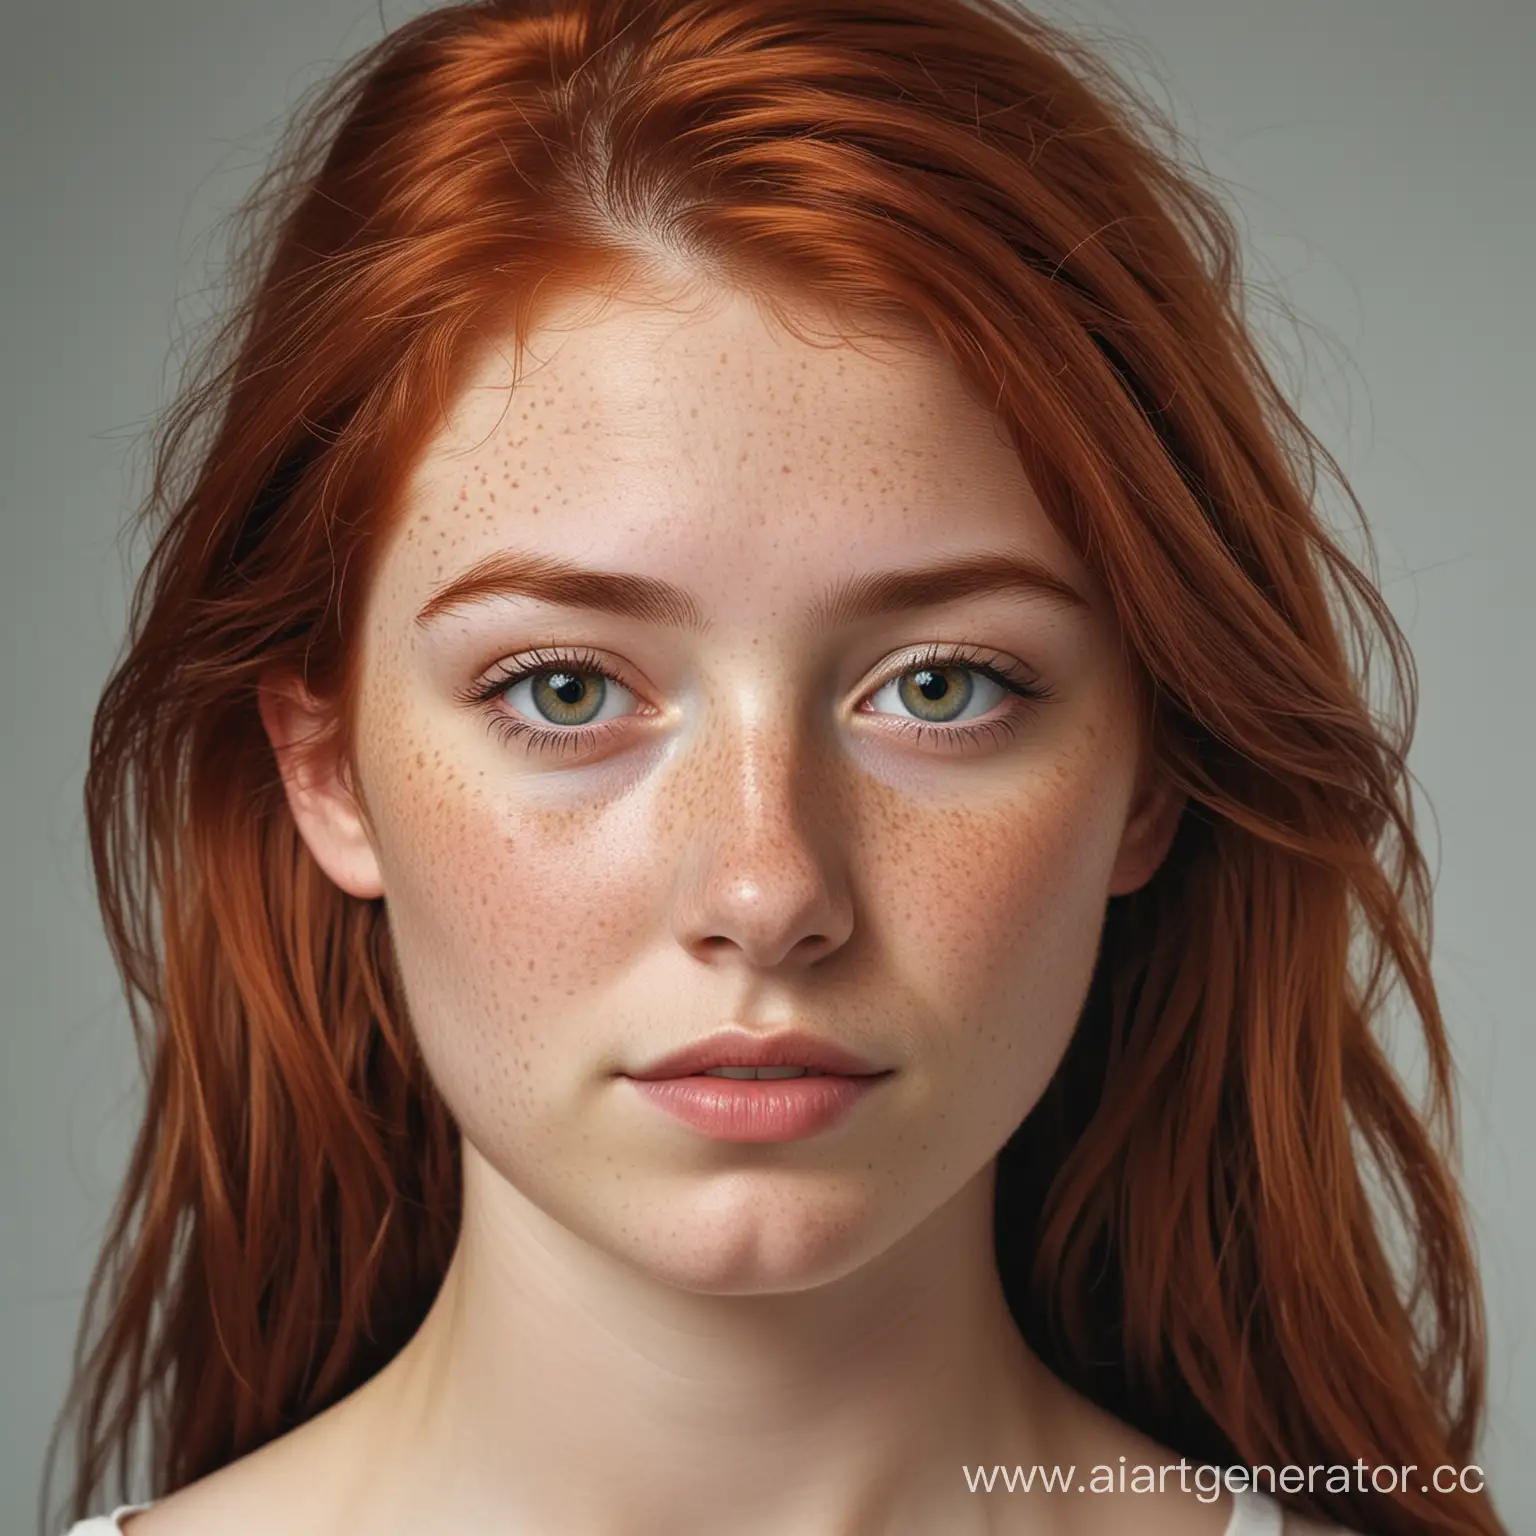 Сгенерируй изображение молодой девчушки лет 17 с рыжими волосами и веснушками.